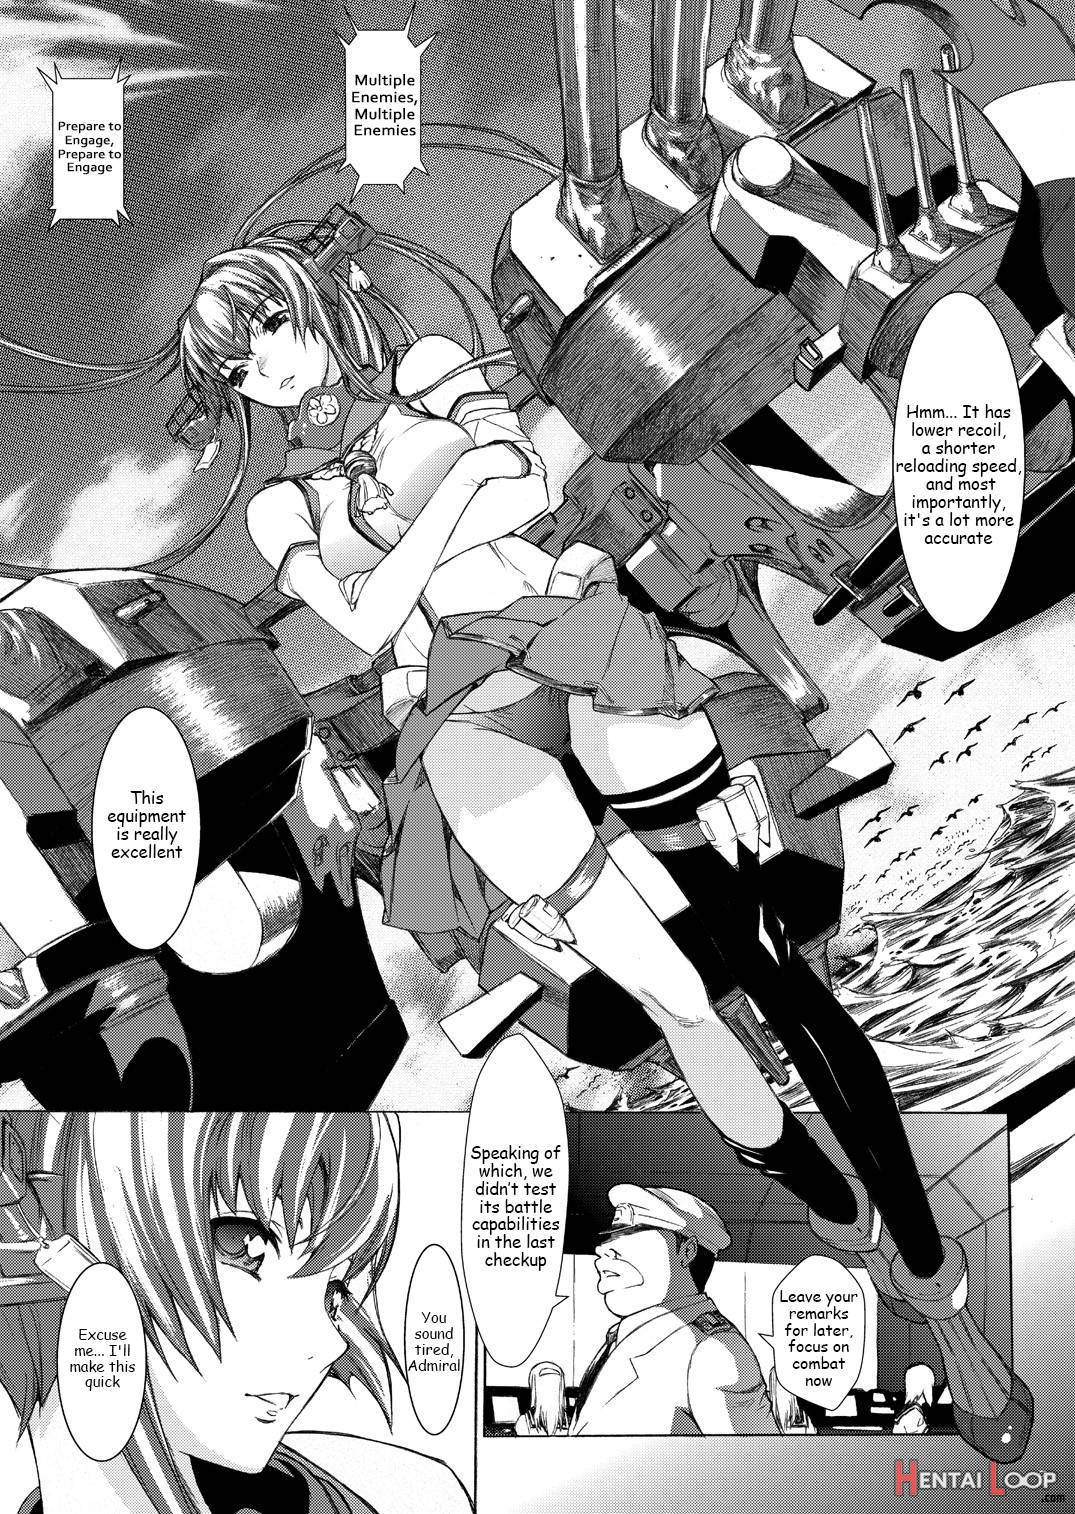 Yamato Shisu 1 page 6